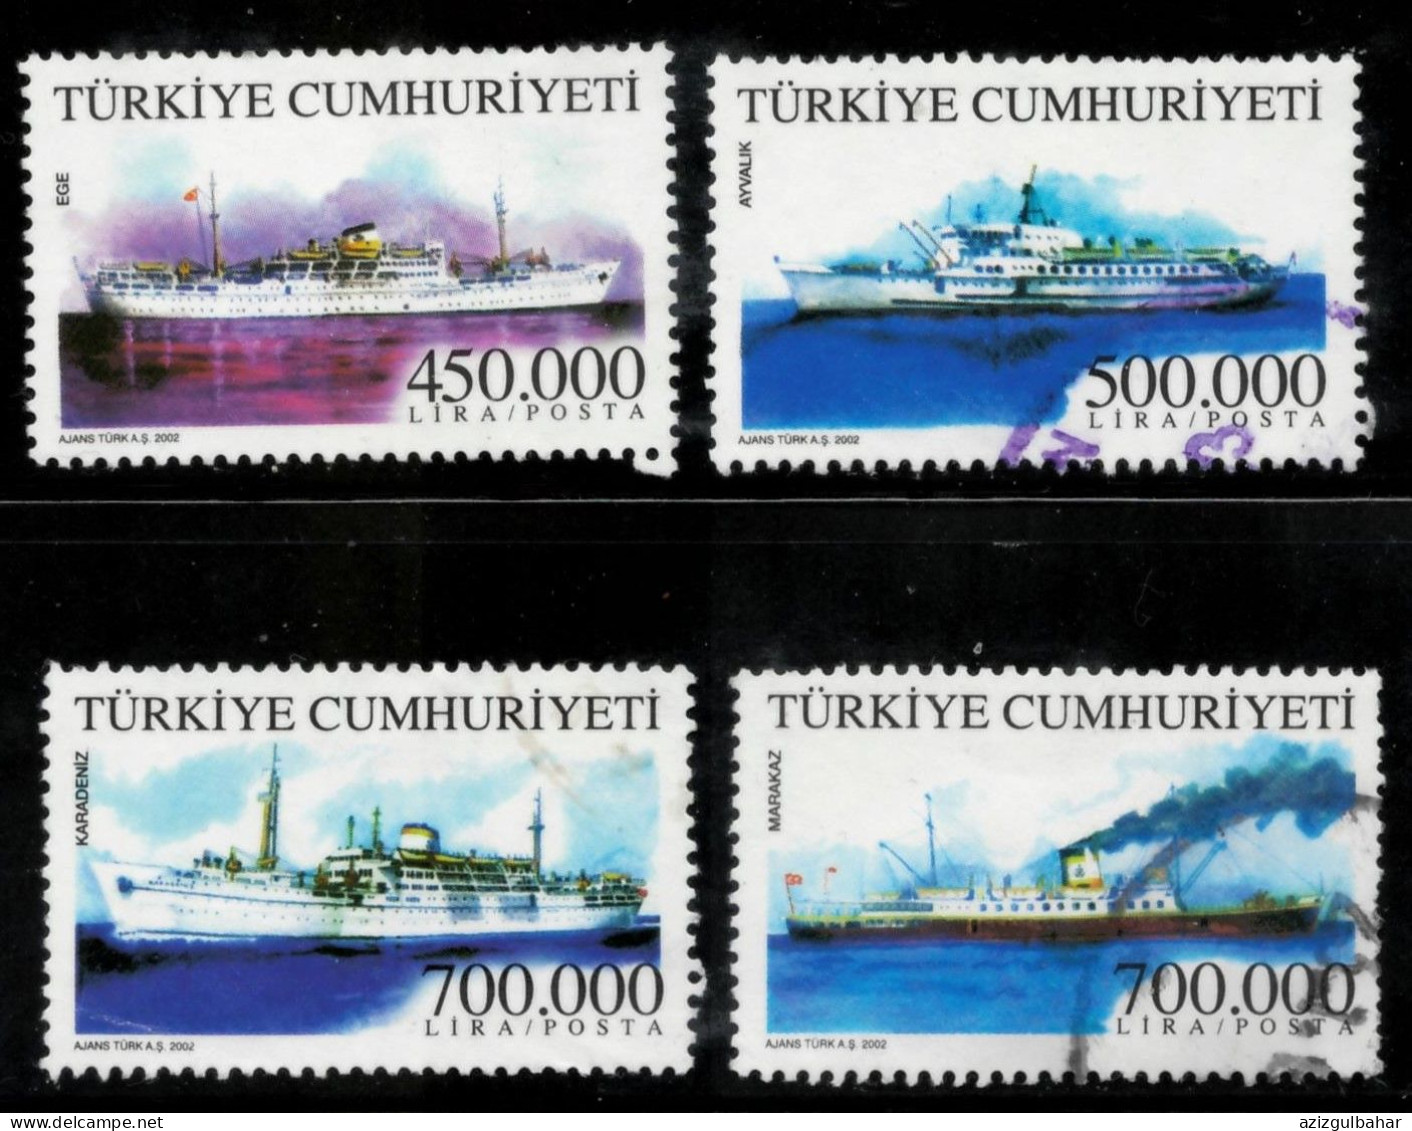 TURKEY 2002 -  USED - TURKISH MERCHANT SHIPS - Gebraucht